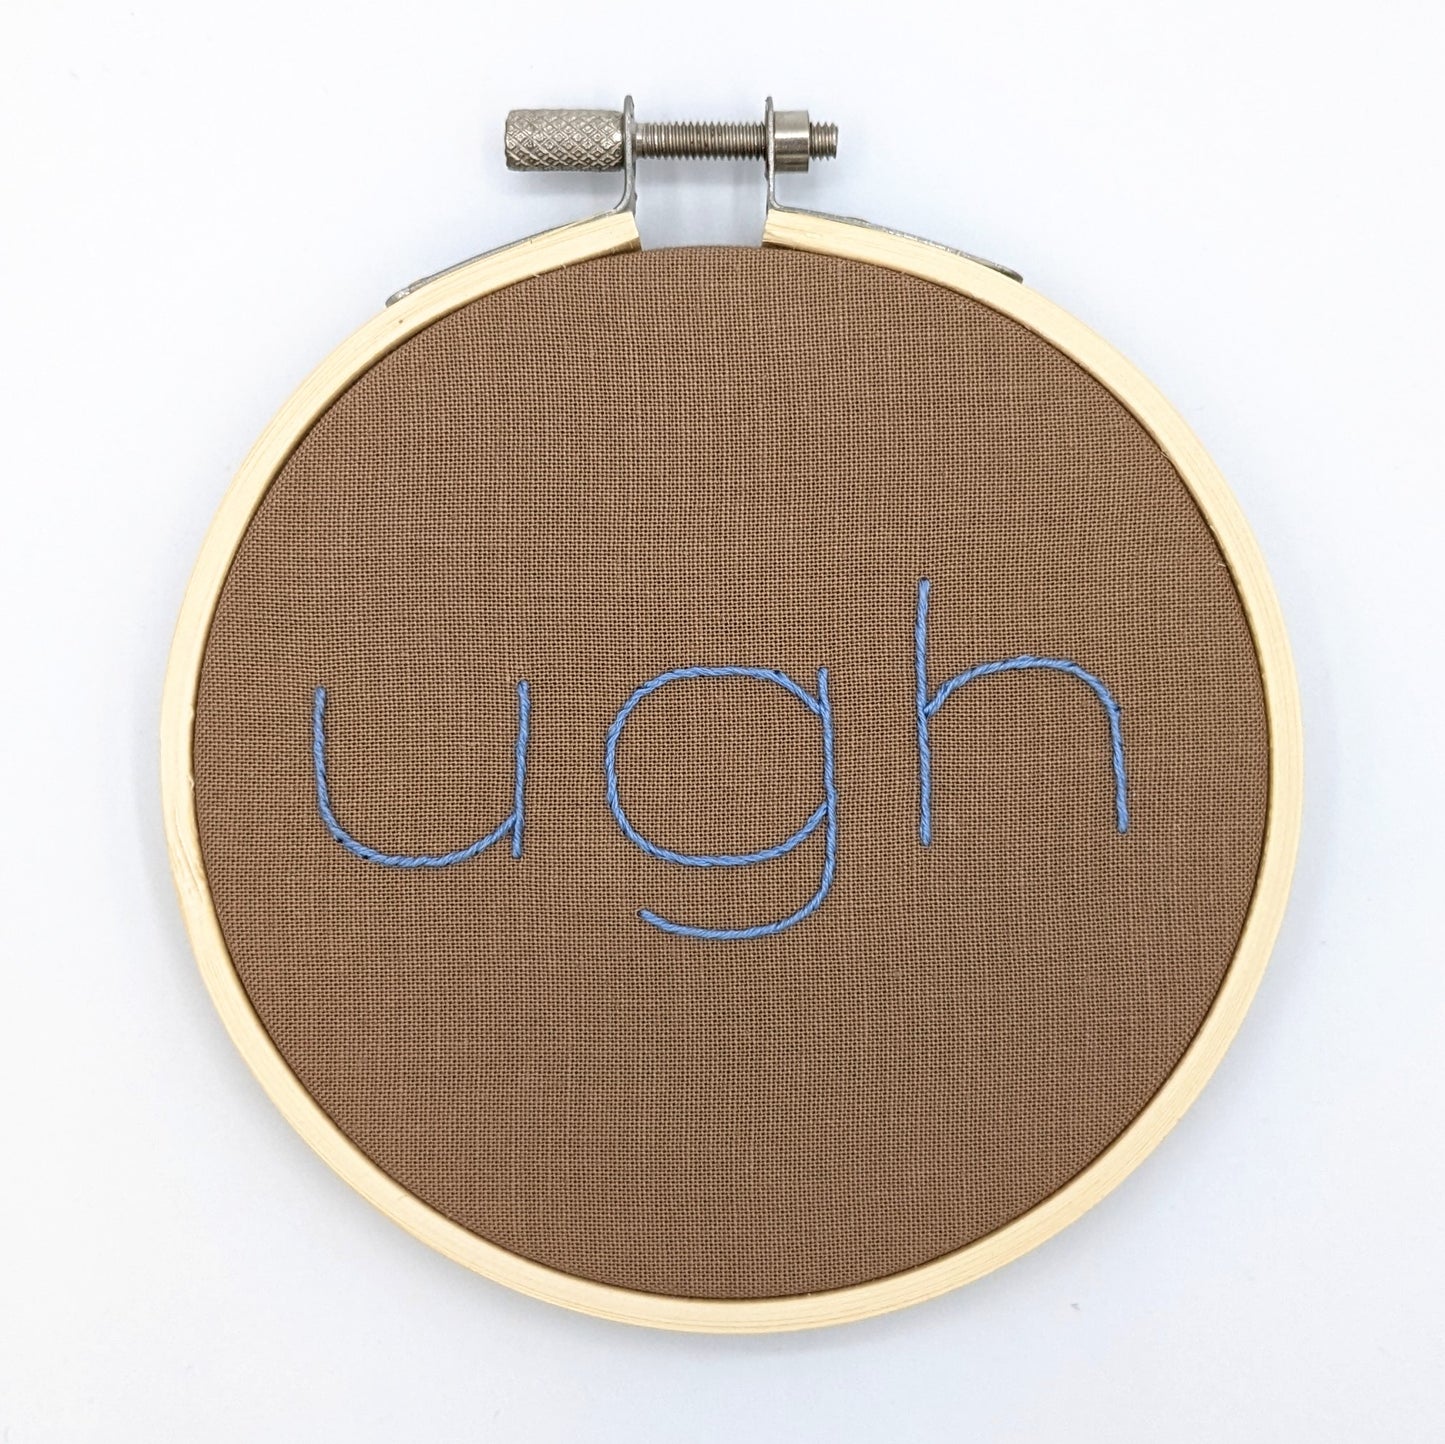 Blue & Brown Ugh Embroidery Hoop Art